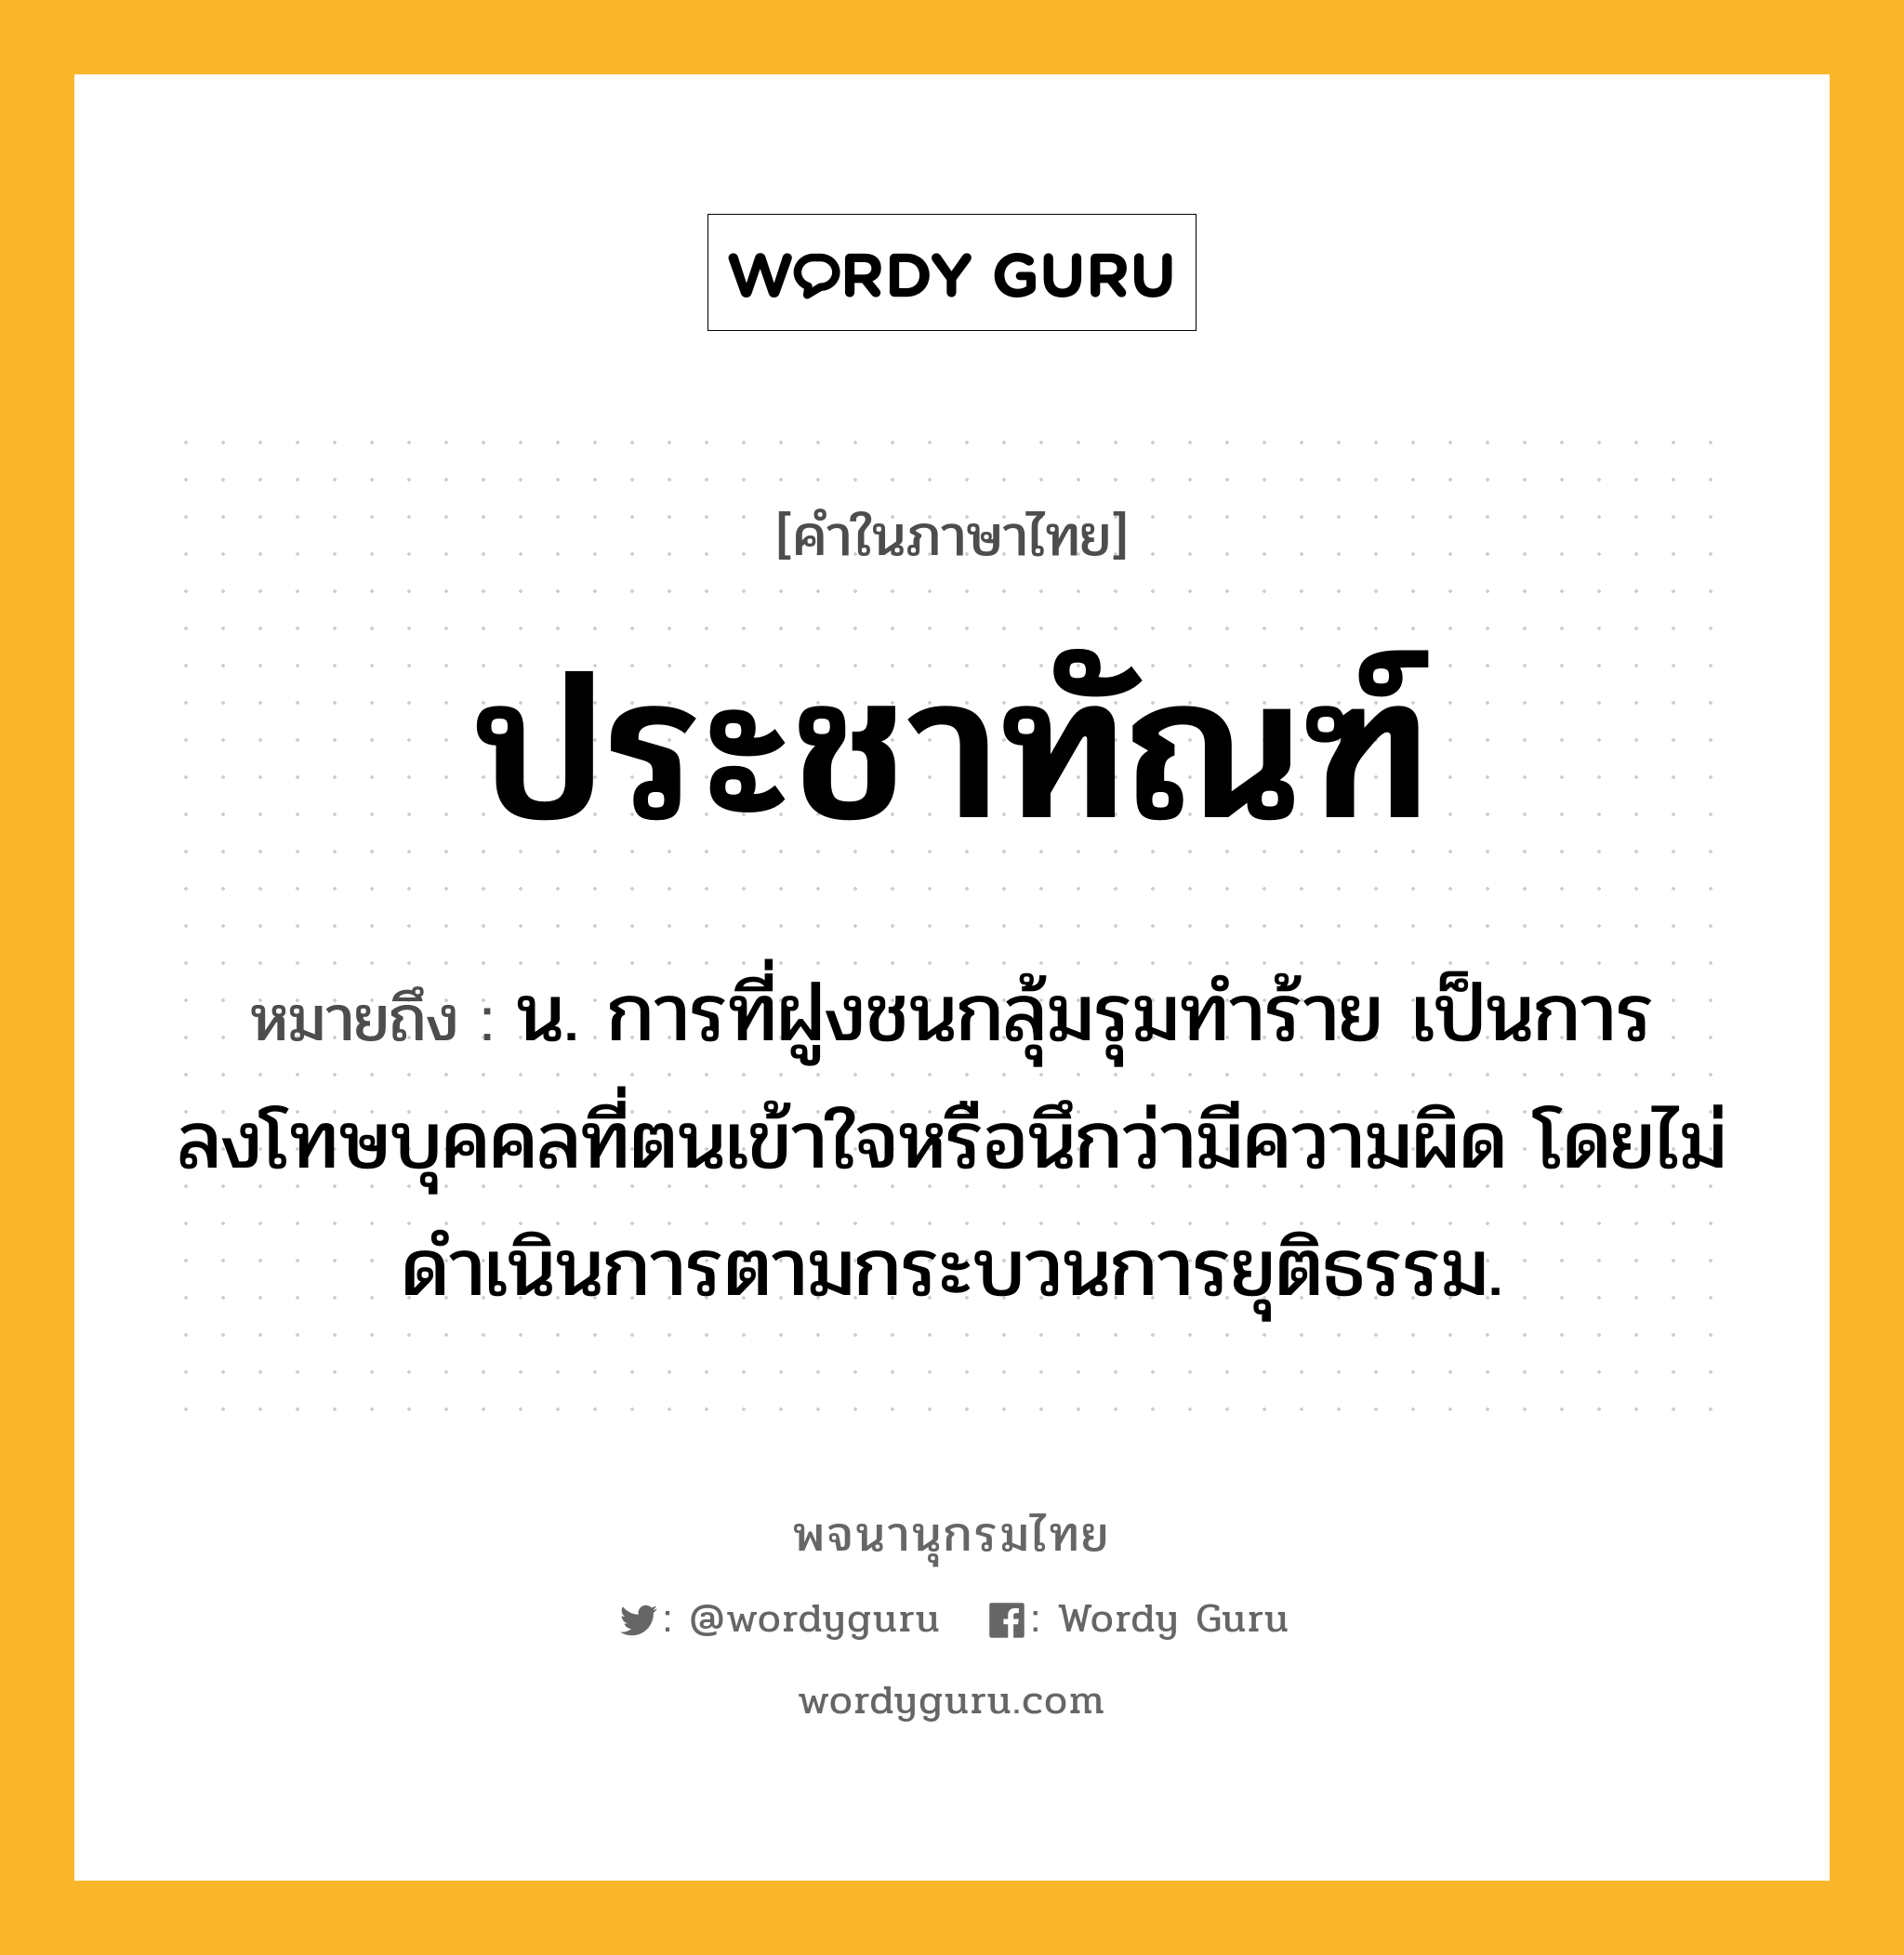 ประชาทัณฑ์ ความหมาย หมายถึงอะไร?, คำในภาษาไทย ประชาทัณฑ์ หมายถึง น. การที่ฝูงชนกลุ้มรุมทําร้าย เป็นการลงโทษบุคคลที่ตนเข้าใจหรือนึกว่ามีความผิด โดยไม่ดําเนินการตามกระบวนการยุติธรรม.